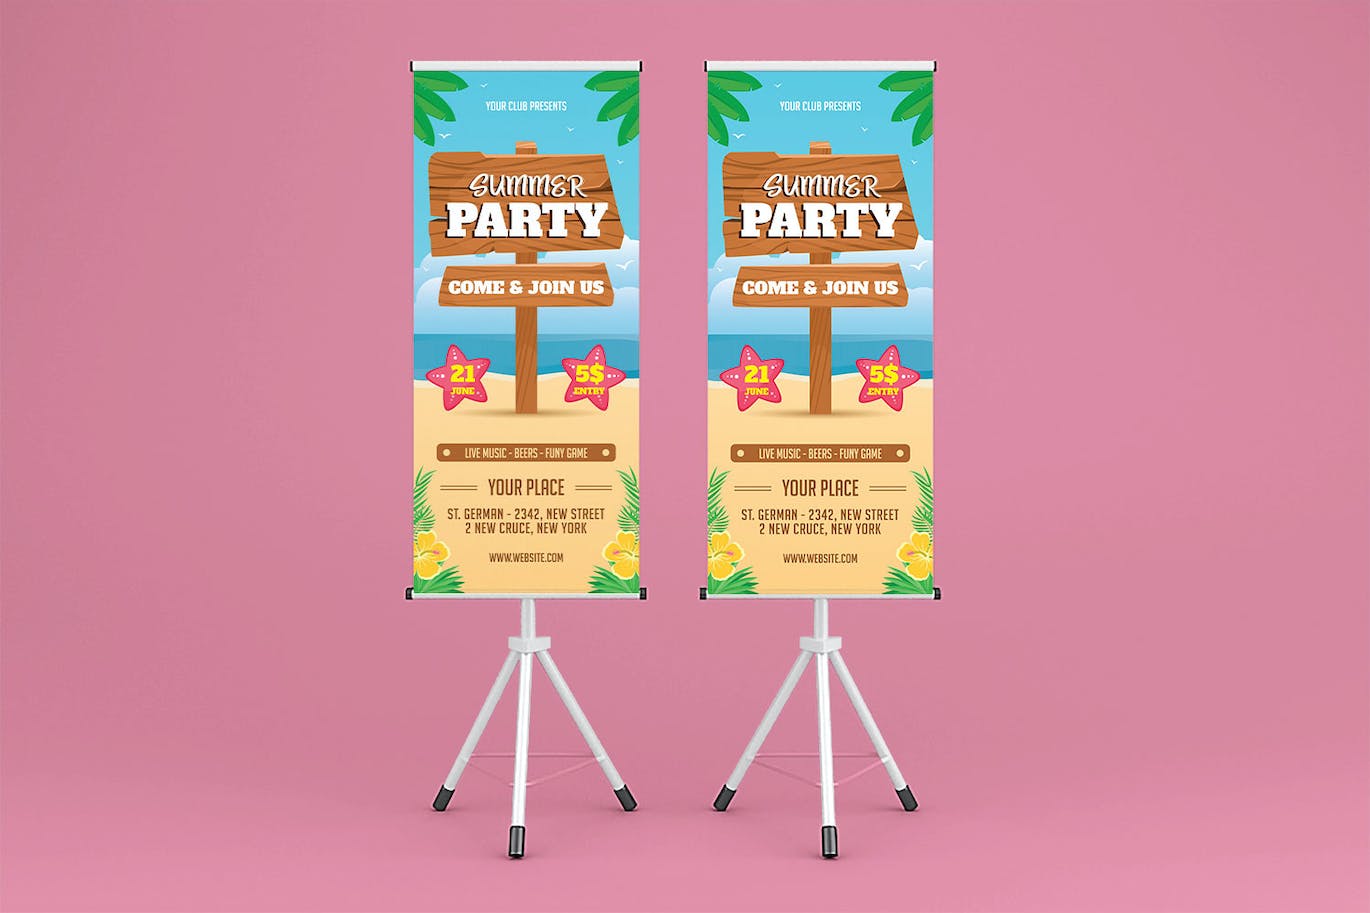 夏季沙滩派对广告易拉宝设计模板